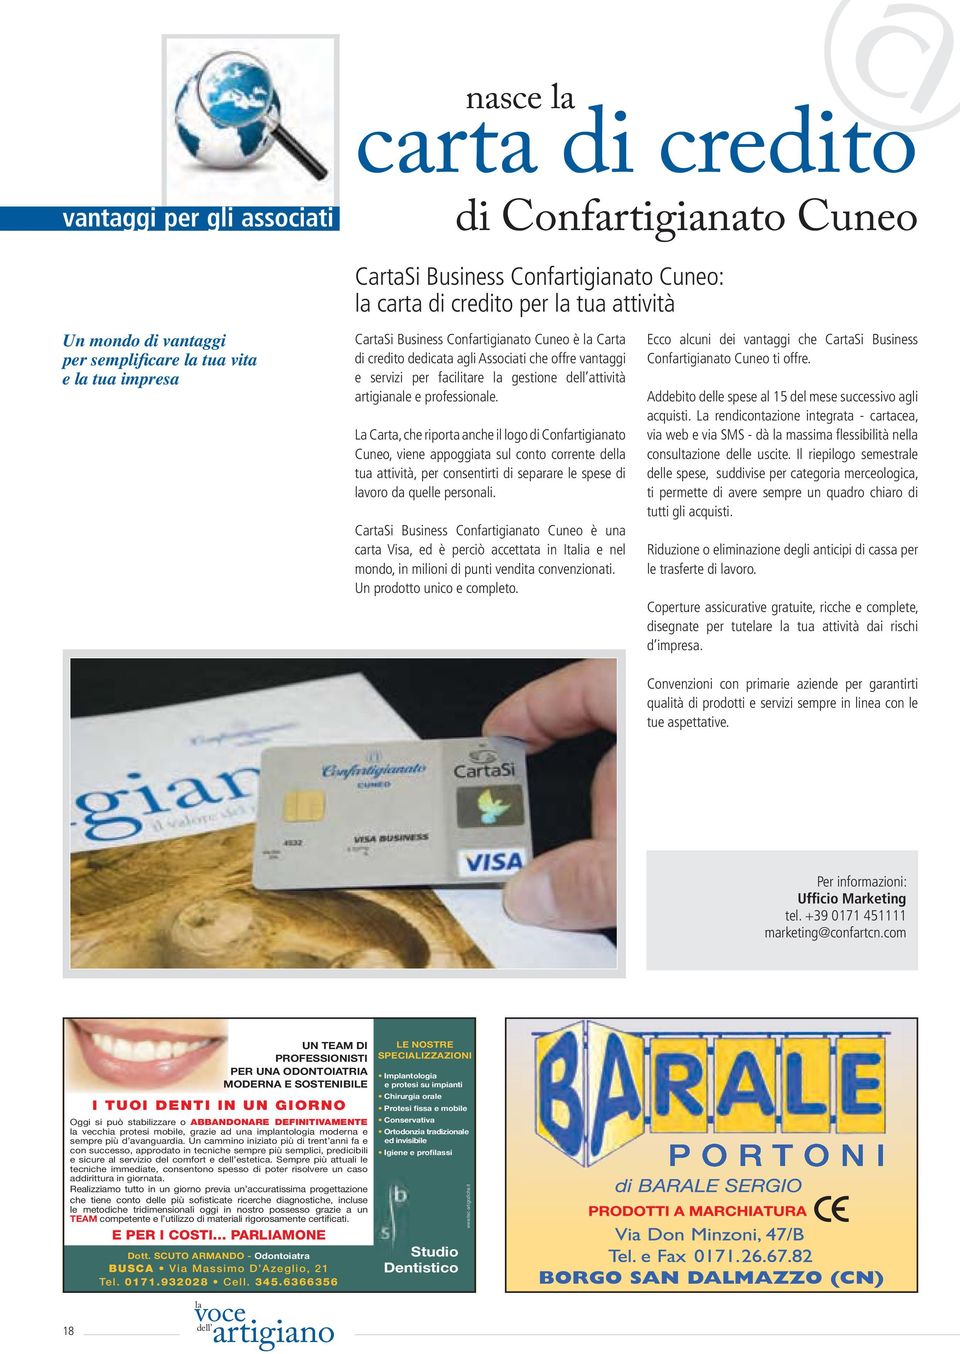 La Carta, che riporta anche il logo di Confartigianato Cuneo, viene appoggiata sul conto corrente del tua attività, per consentirti di separare le spese di voro da quelle personali.